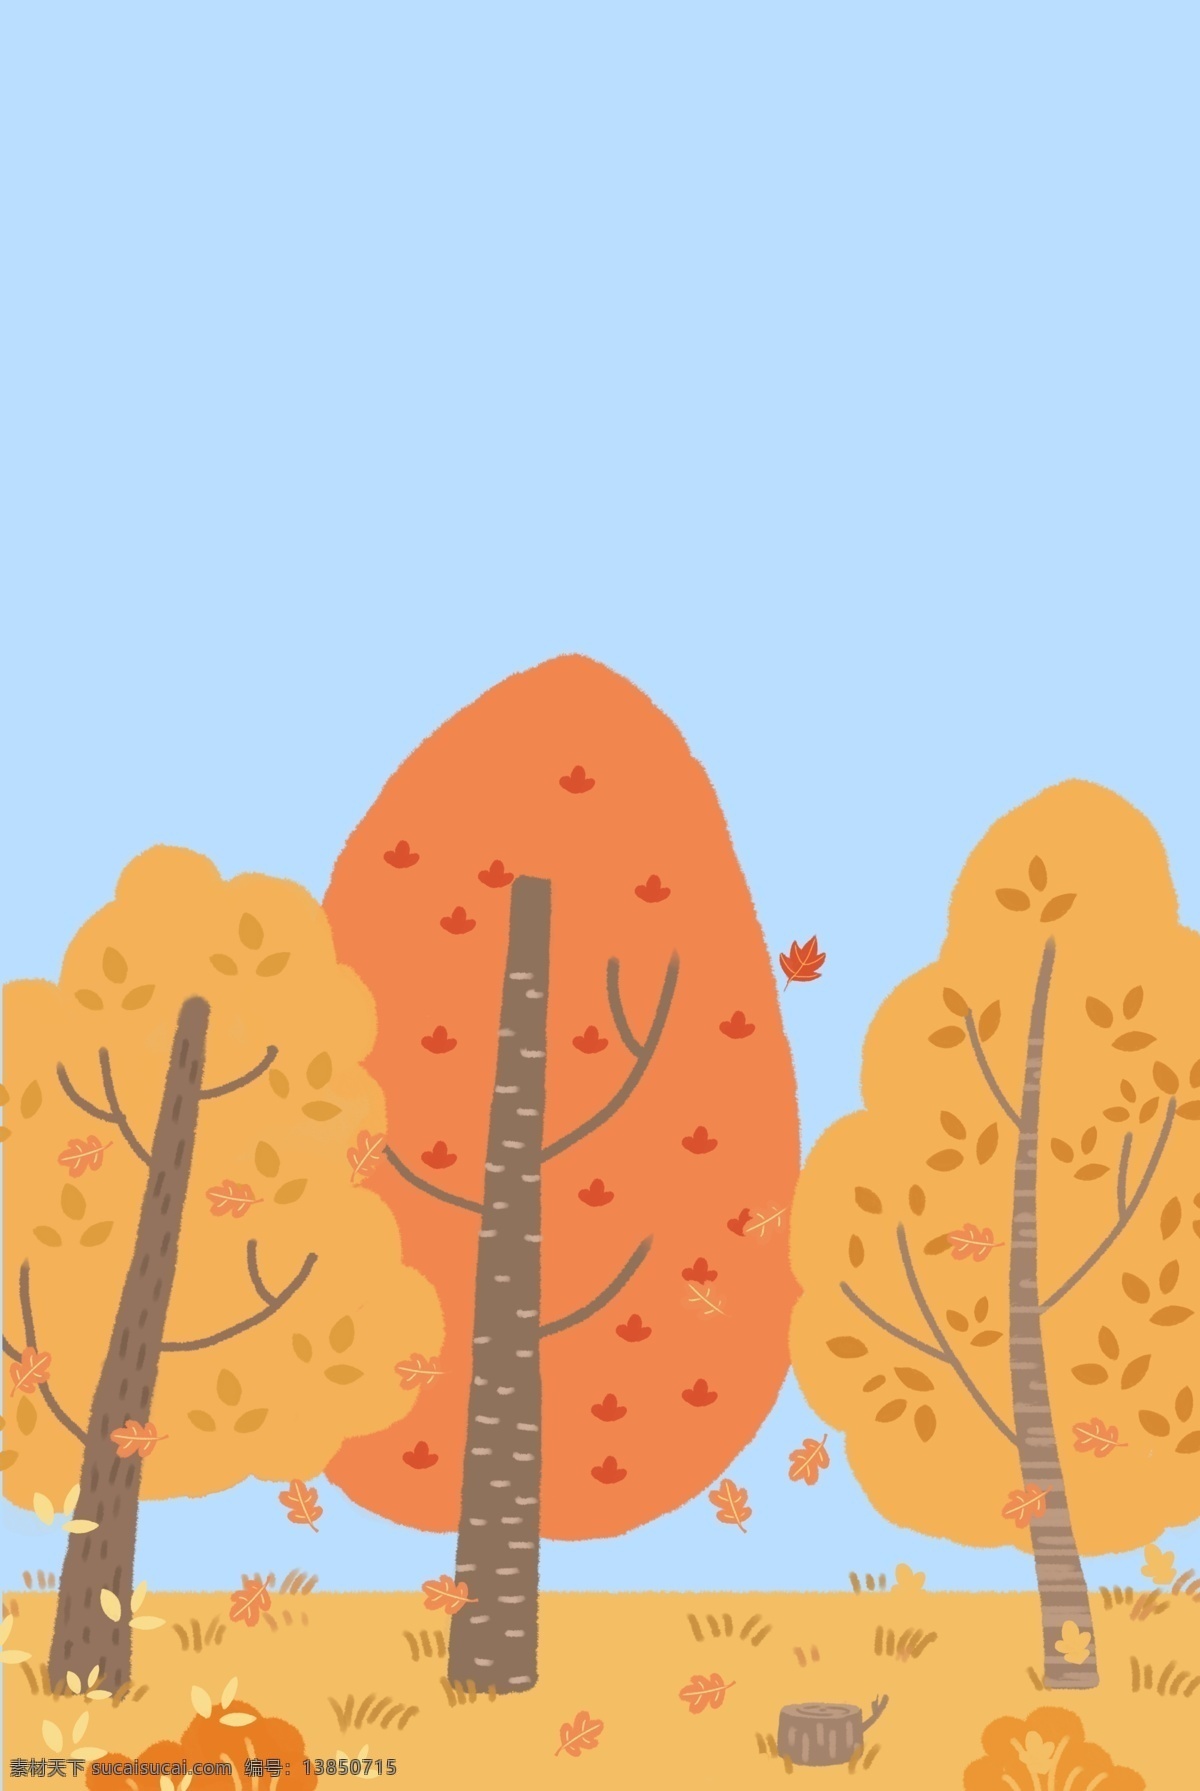 手绘 秋色 海报 背景 秋季 秋天 树木 落叶 叶子